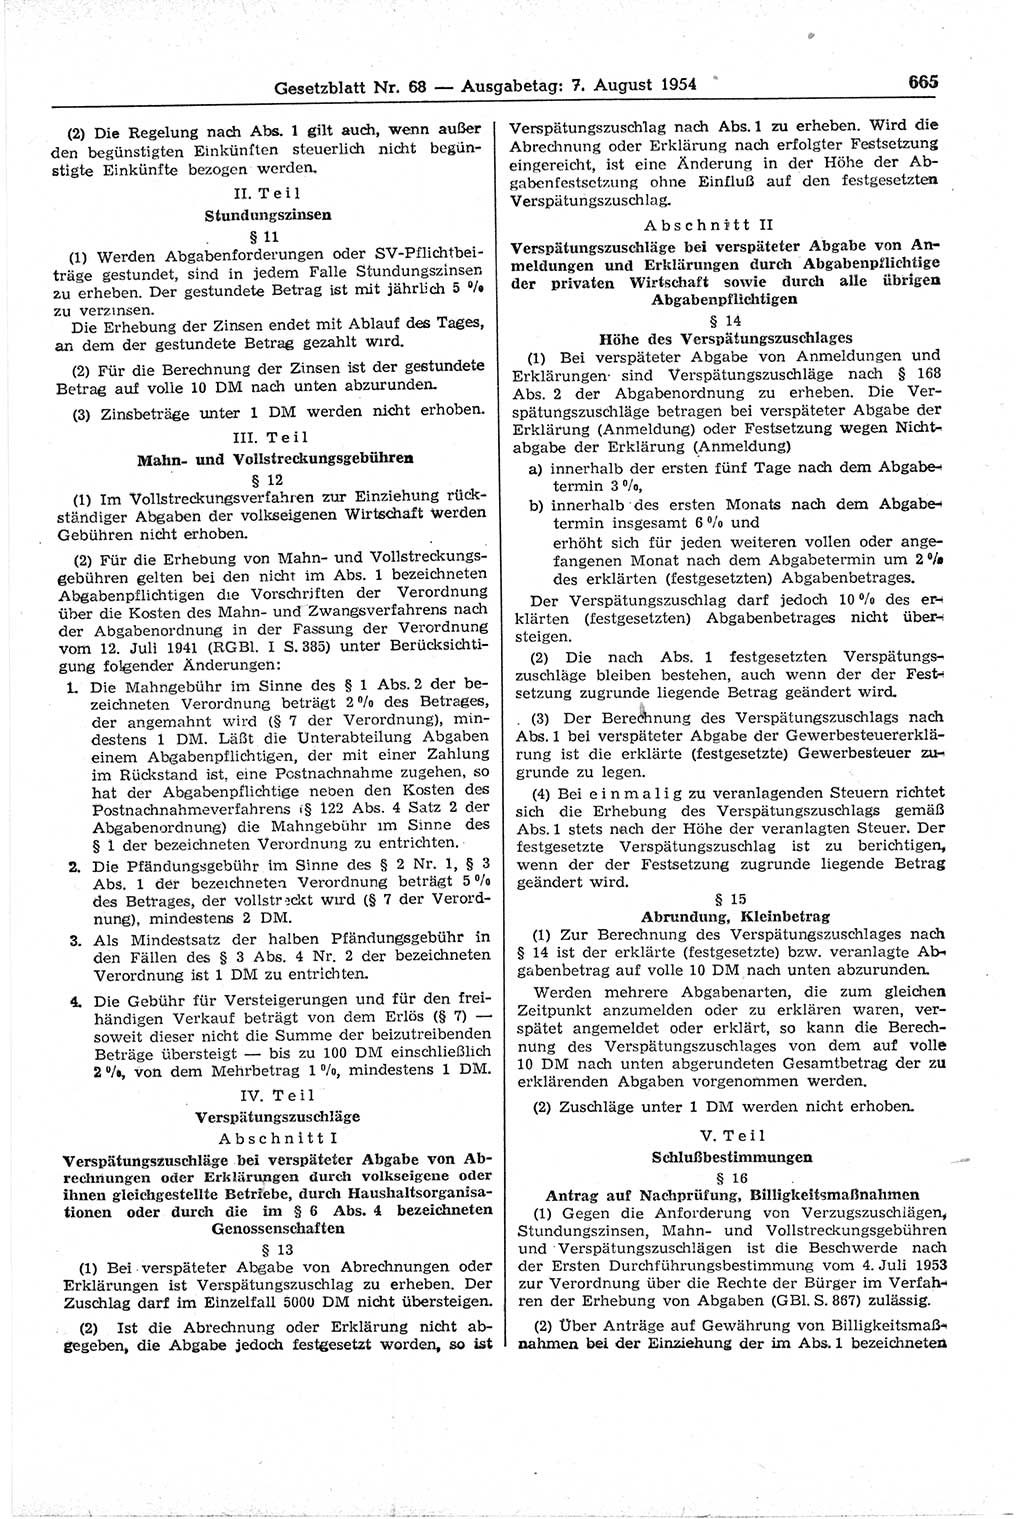 Gesetzblatt (GBl.) der Deutschen Demokratischen Republik (DDR) 1954, Seite 665 (GBl. DDR 1954, S. 665)